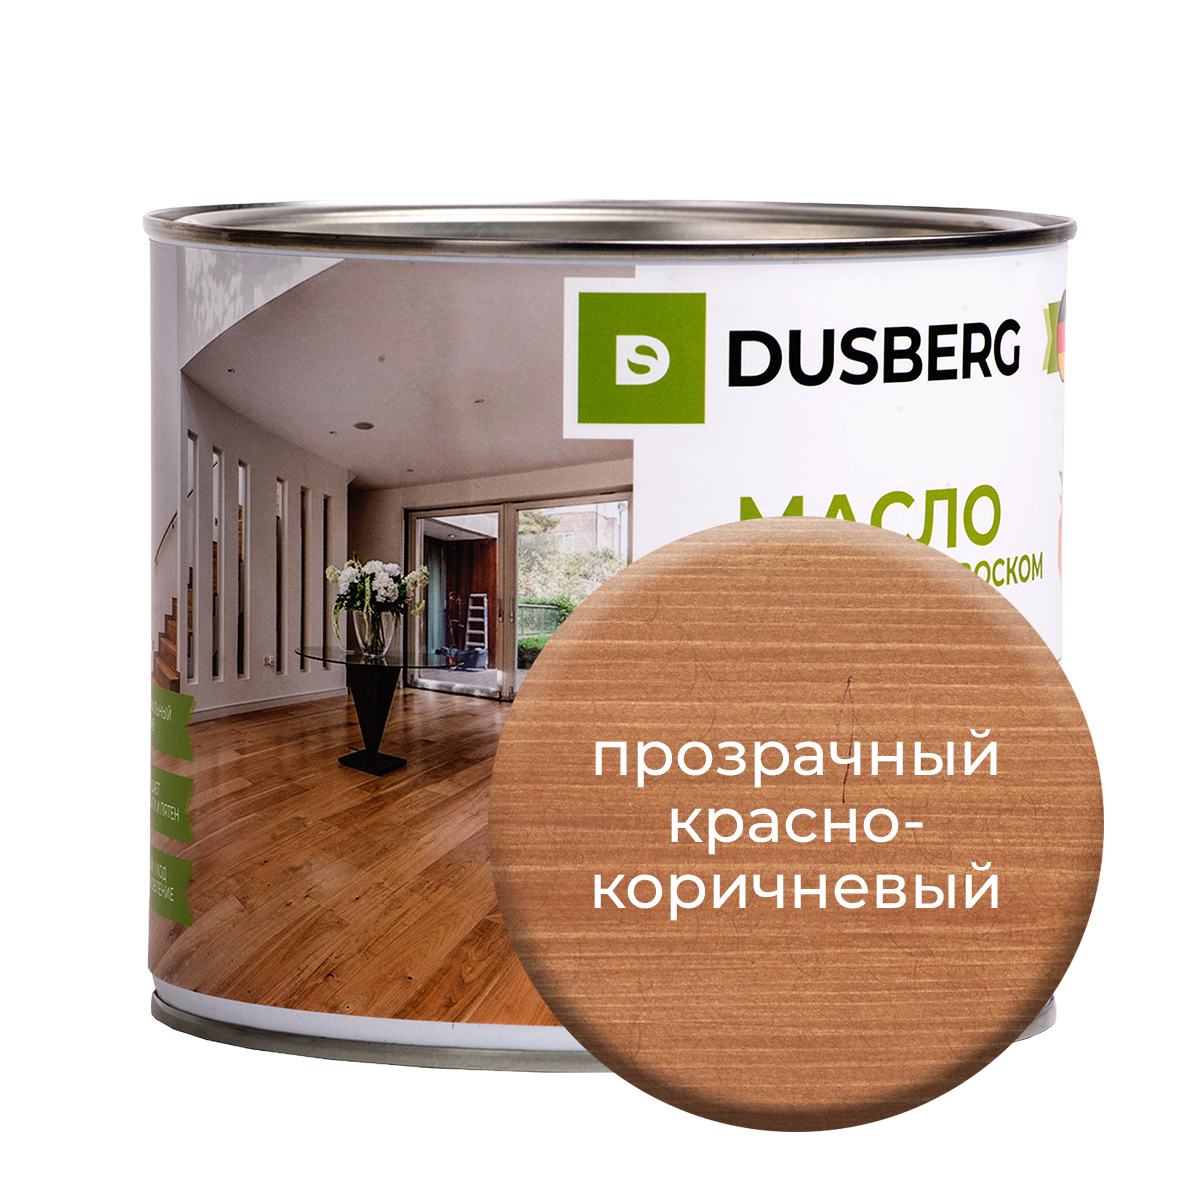 Масло Dusberg с твердым воском на бесцветной основе, 2 л Прозрачный красно-коричневый масло dusberg для дерева на бесцветной основе 750 мл светло коричневый